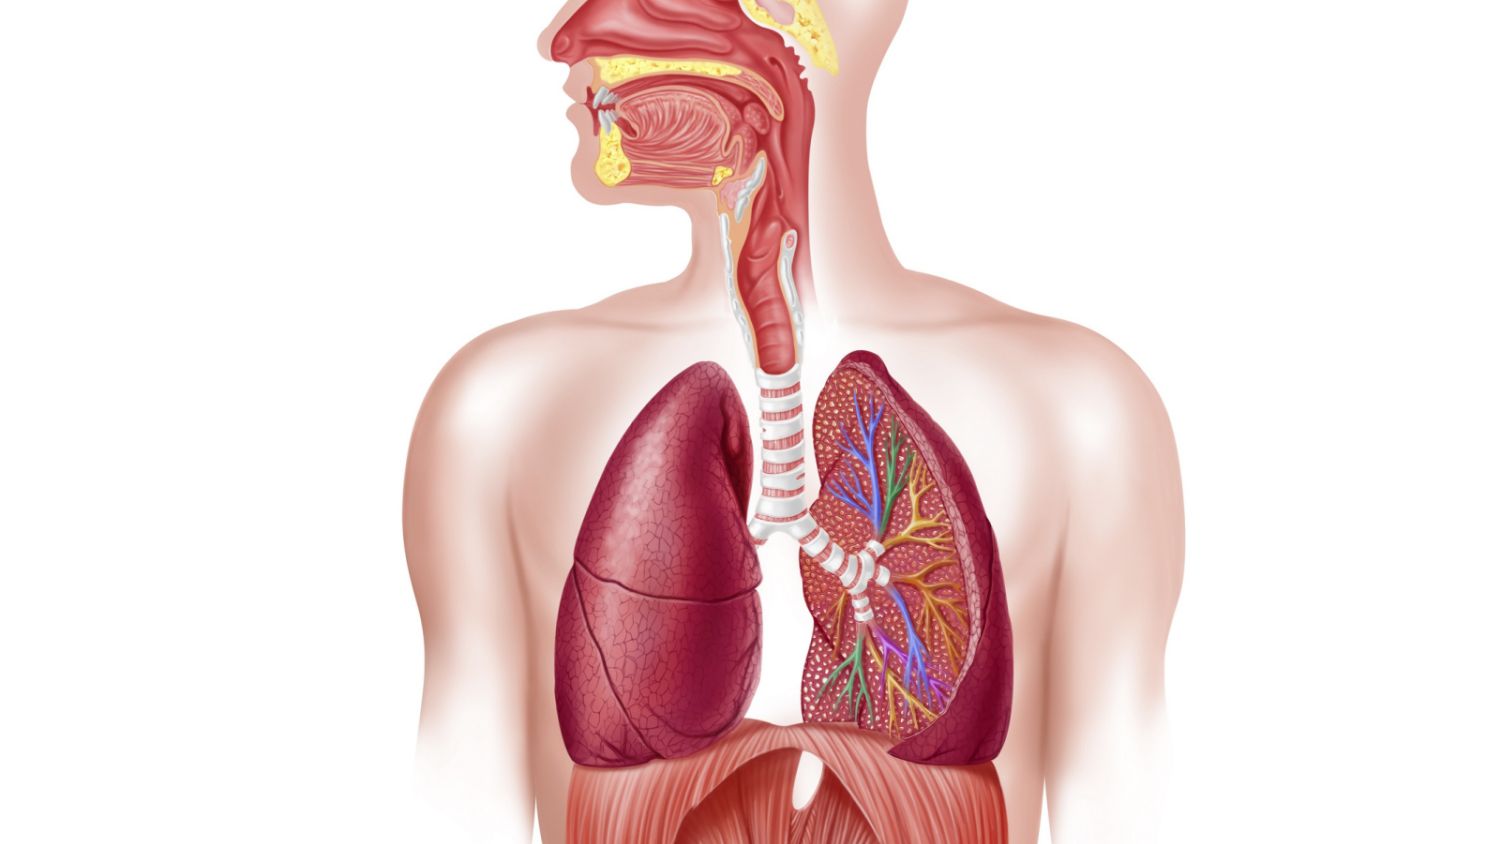 Respiratory sinus arrhythmia